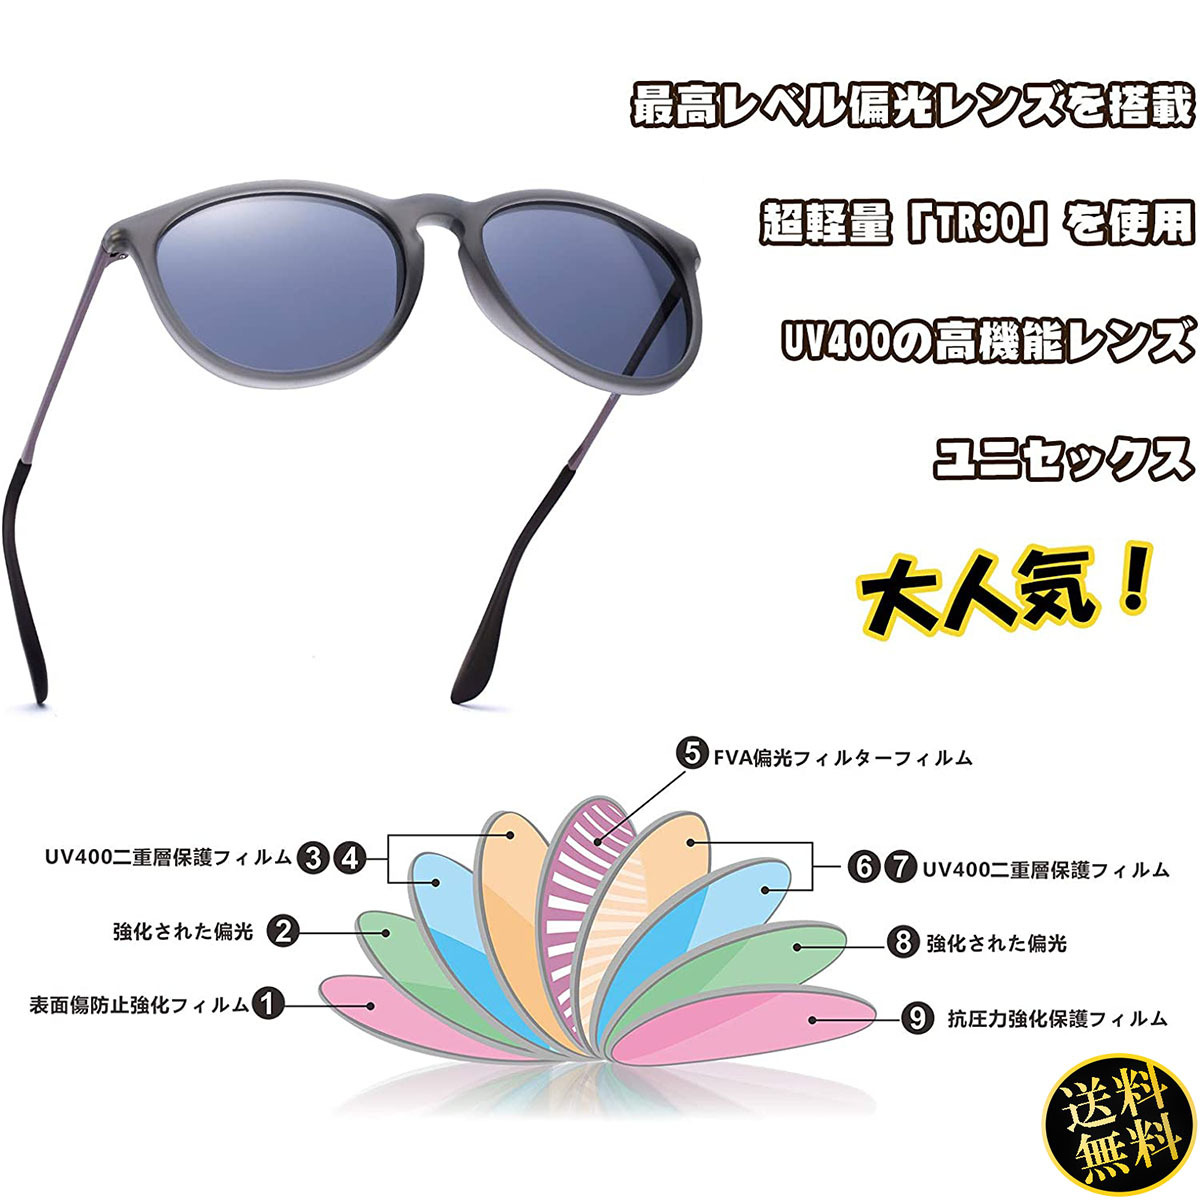 【日本人の骨格に合わせて設計】 サングラス ブラックグラス 偏光機能 UV400 オシャレ ファッション メンズ ユニセックス ペアルック